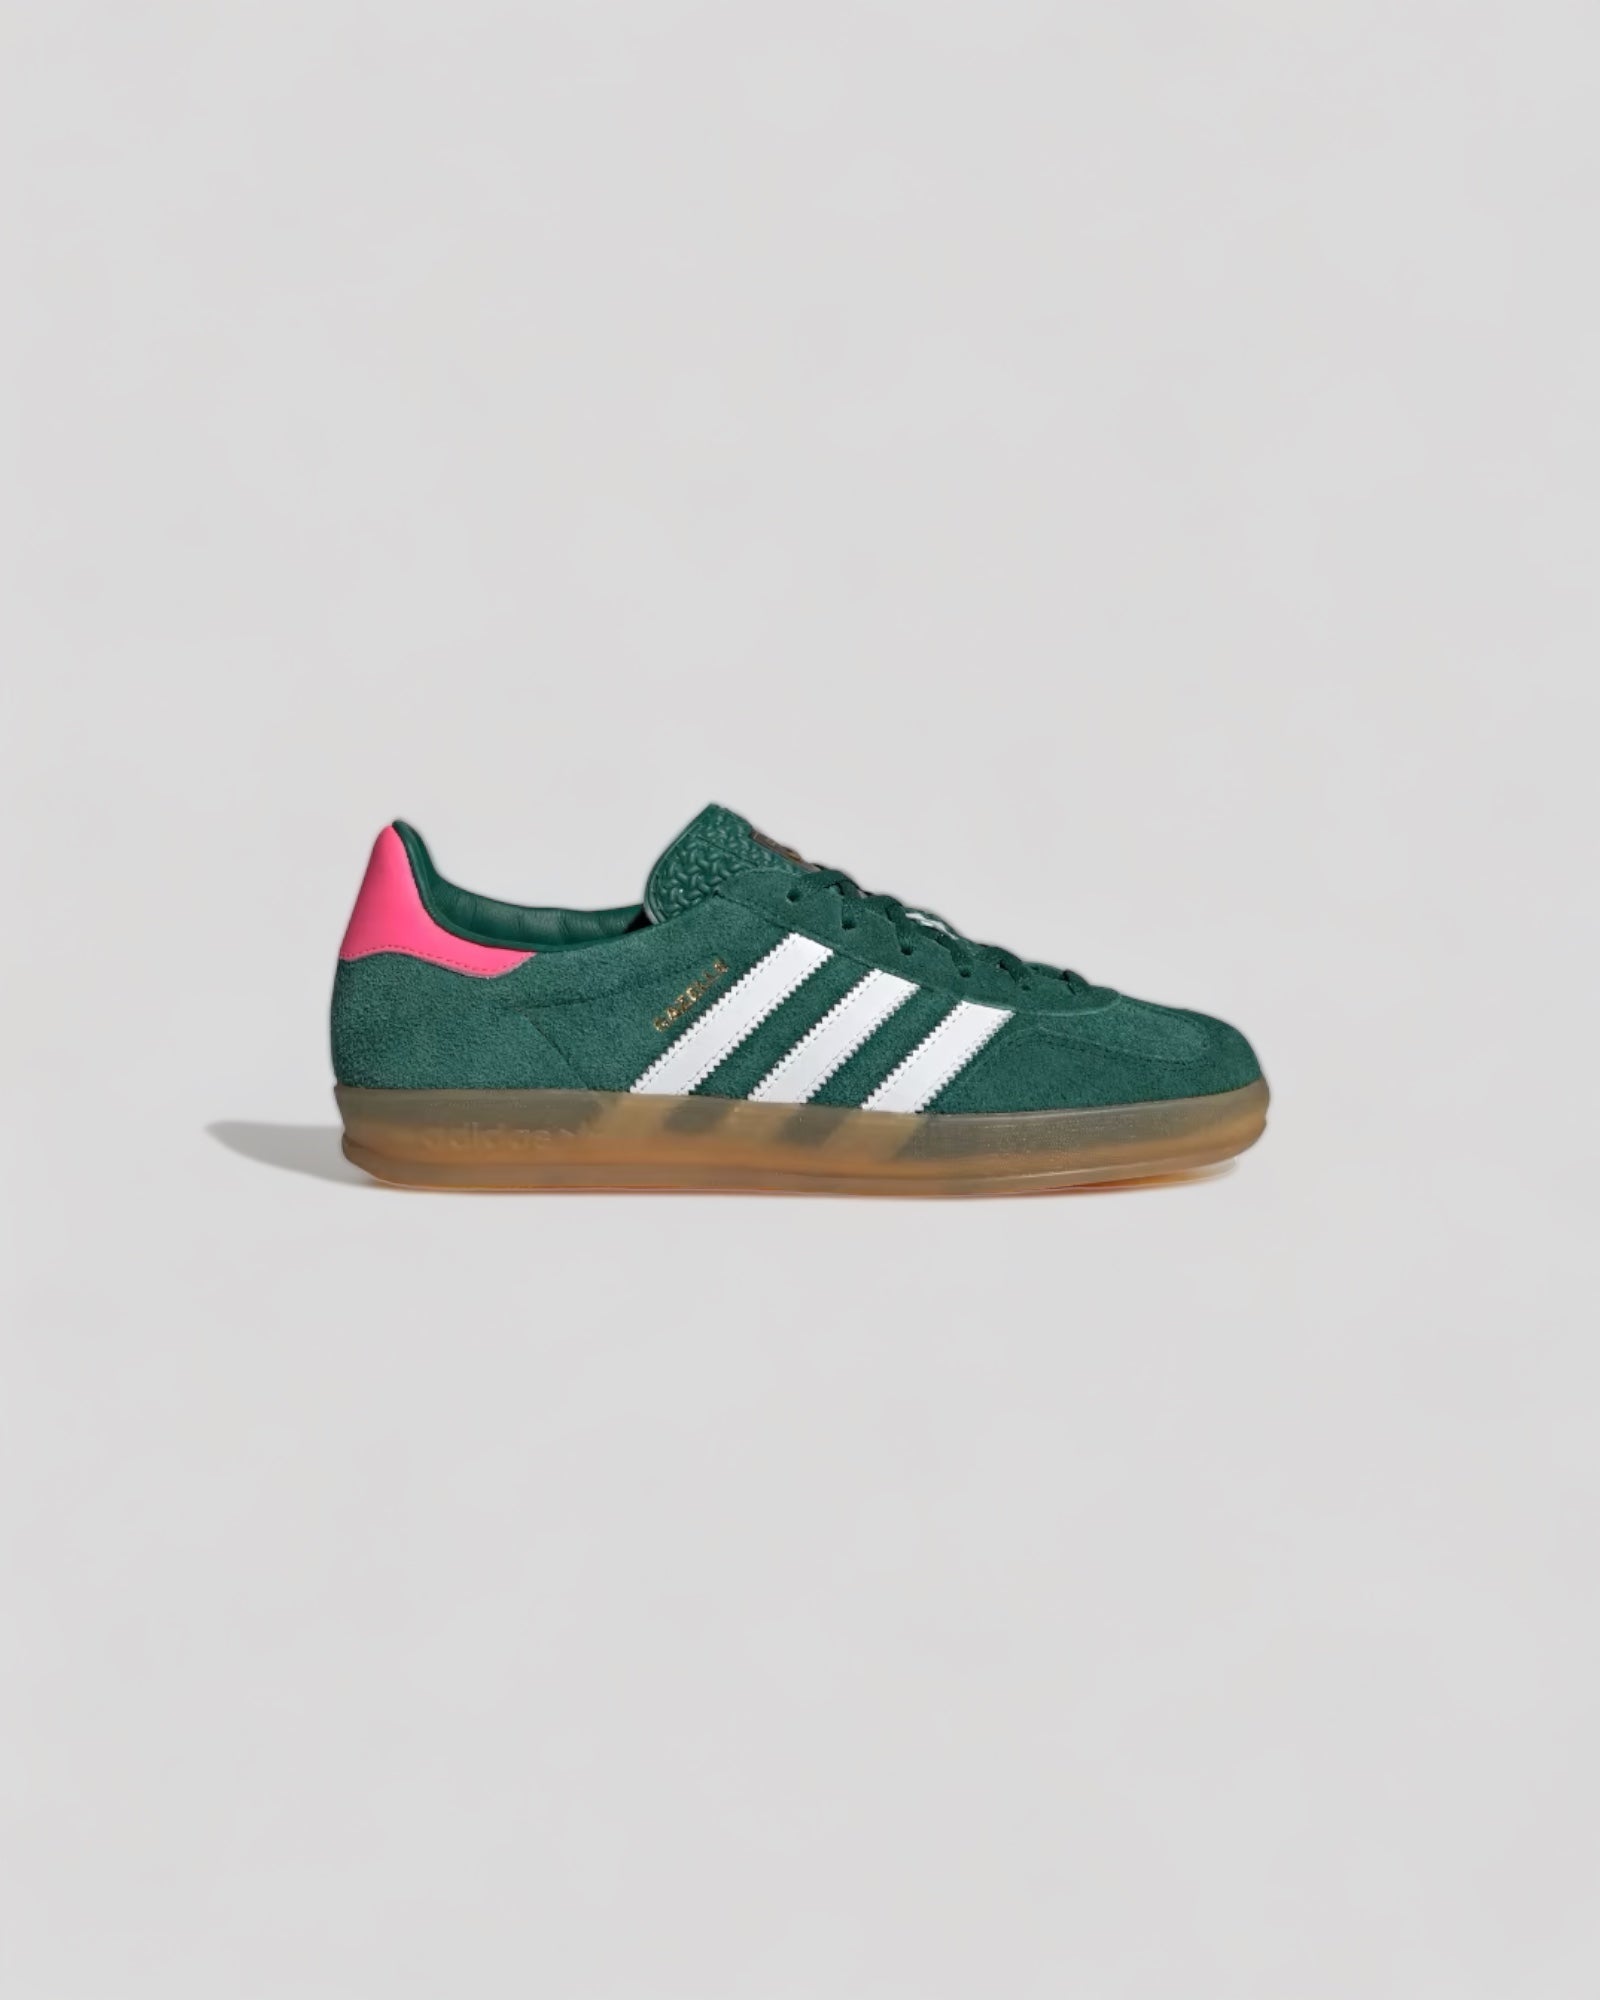 Adidas || Gazelle Indoor - Collegiate Green Lucid Pink